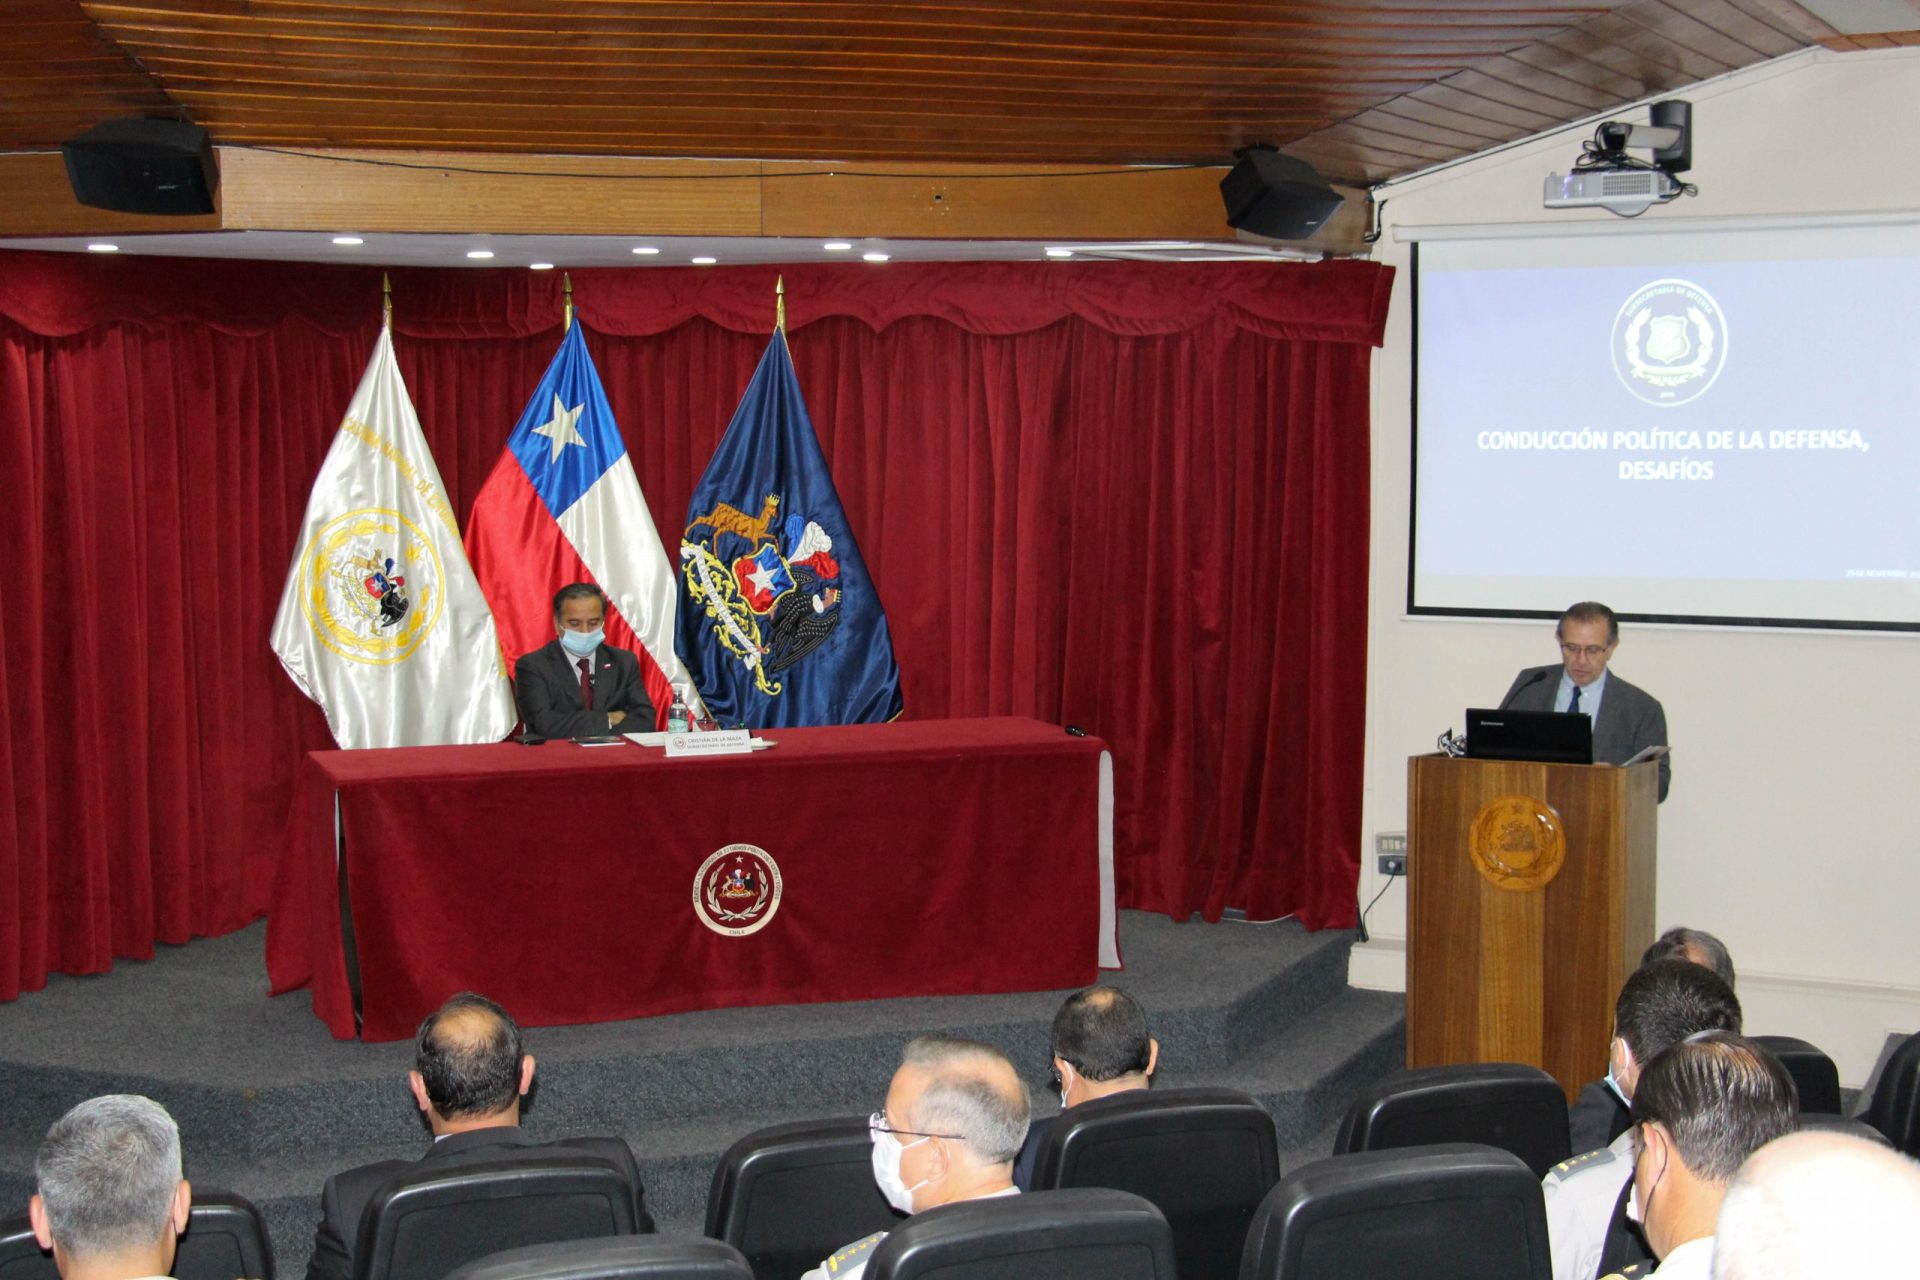 Subsecretario de Defensa inauguró Seminario para Oficiales Generales y Almirantes de las Fuerzas Armadas organizado por la ANEPE